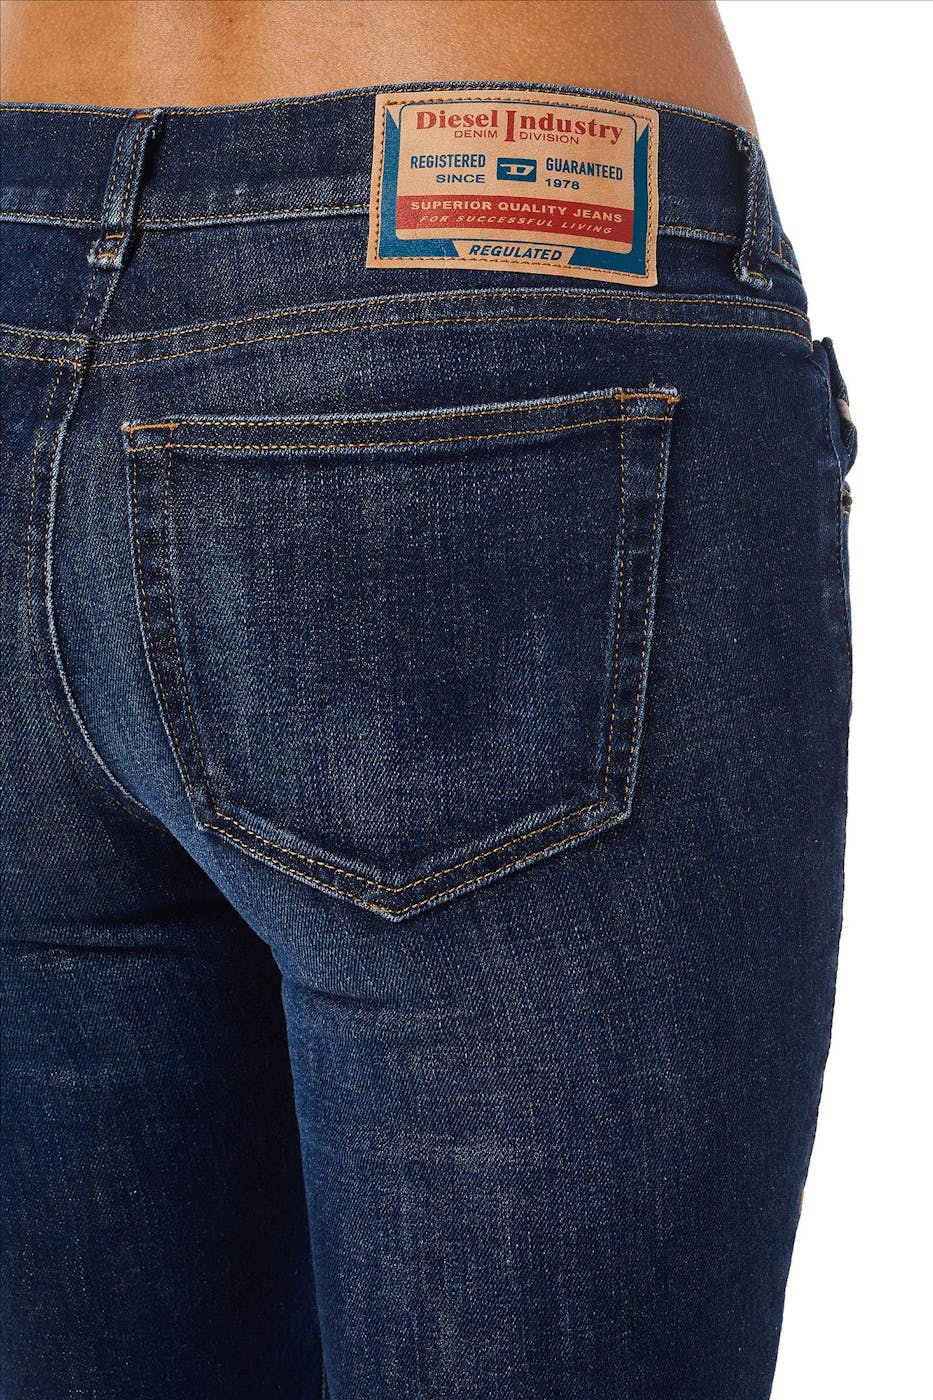 Diesel - Donkerblauwe 1969 flared jeans